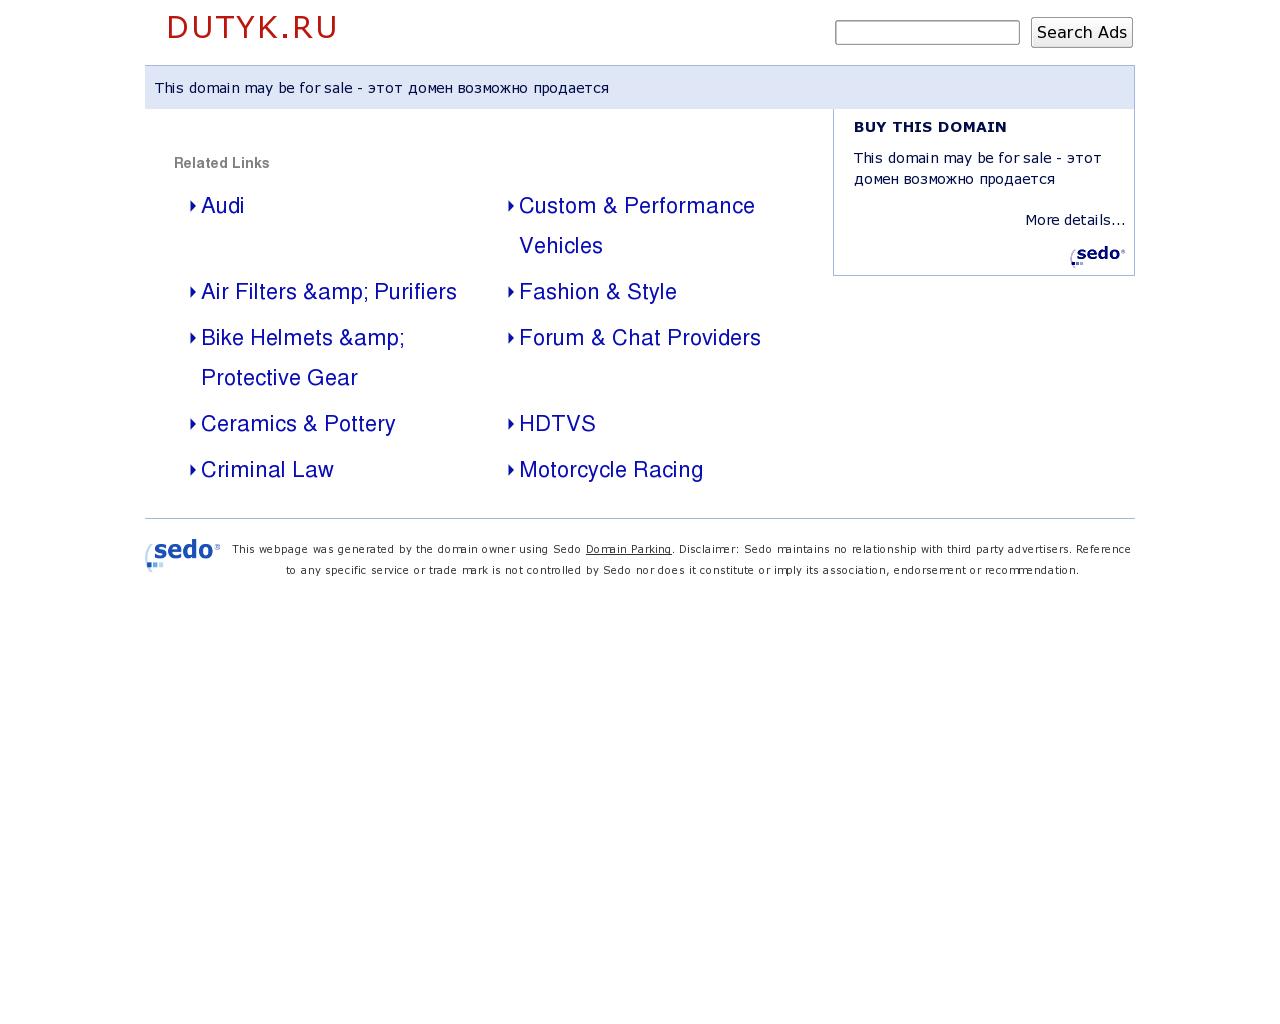 Изображение сайта dutyk.ru в разрешении 1280x1024